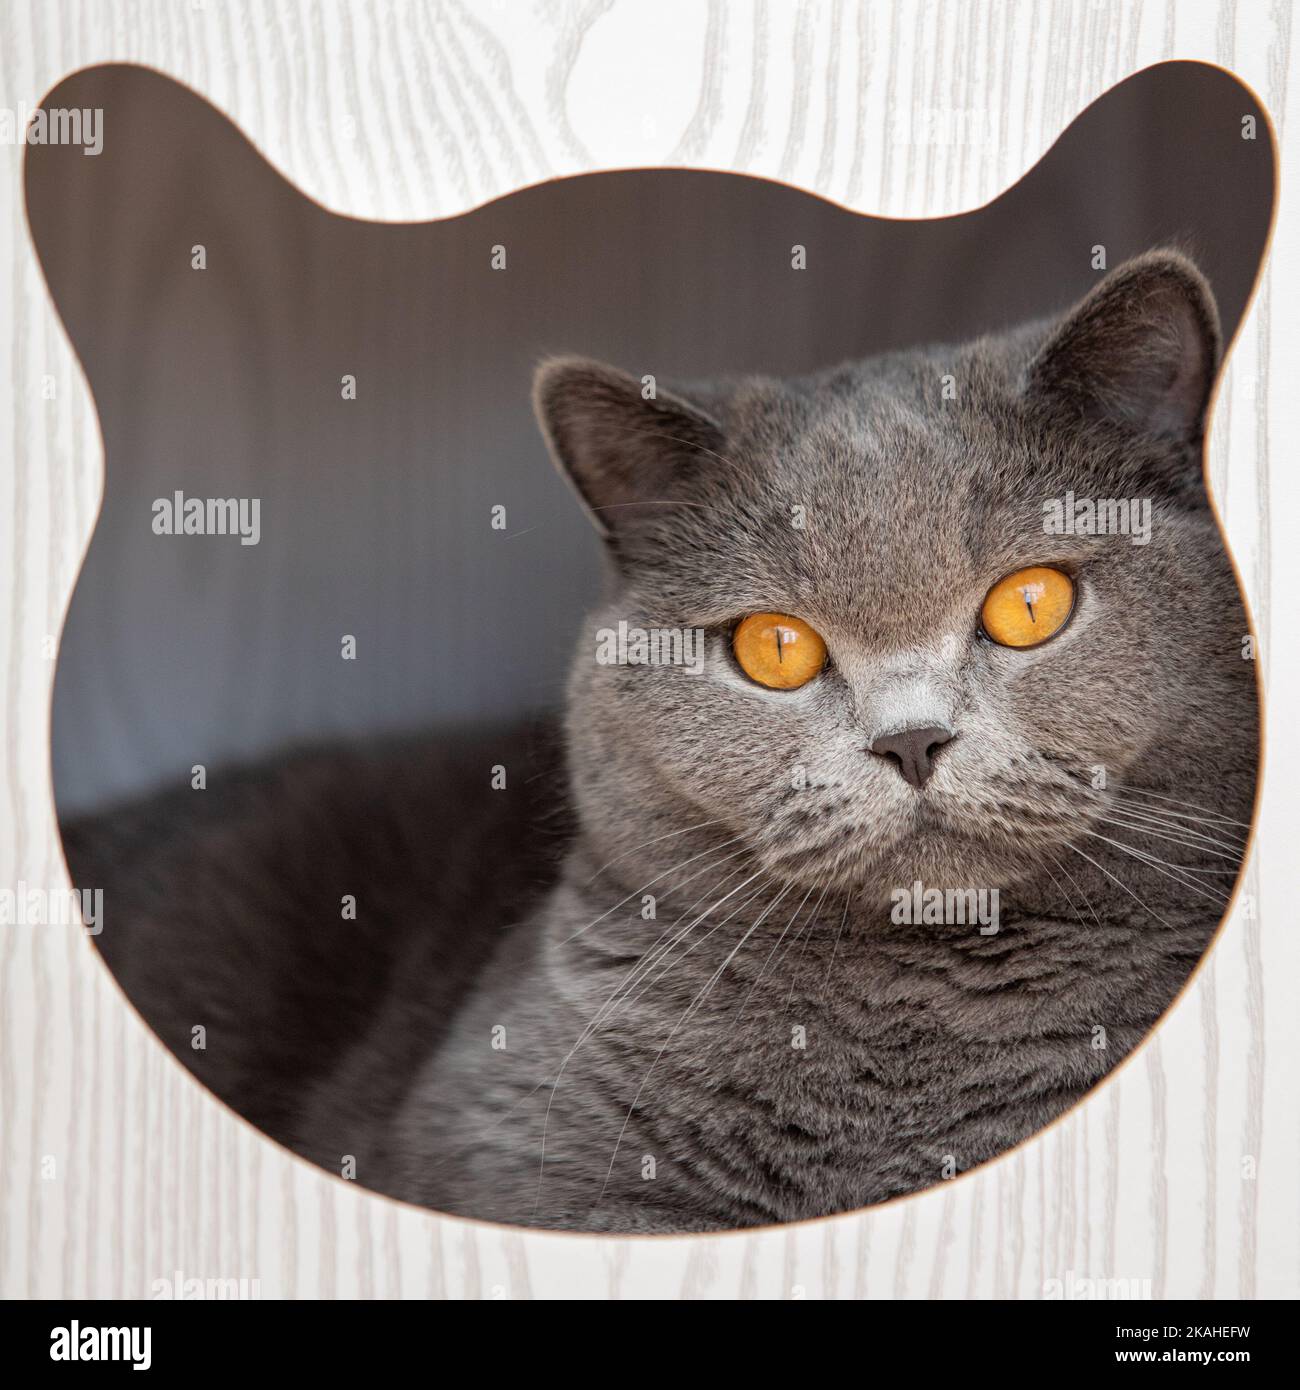 Portrait en gros plan d'un chat gris britannique de shorthair allongé dans un lit de chat à capuchon regardant à travers une ouverture en forme de visage de chat Banque D'Images